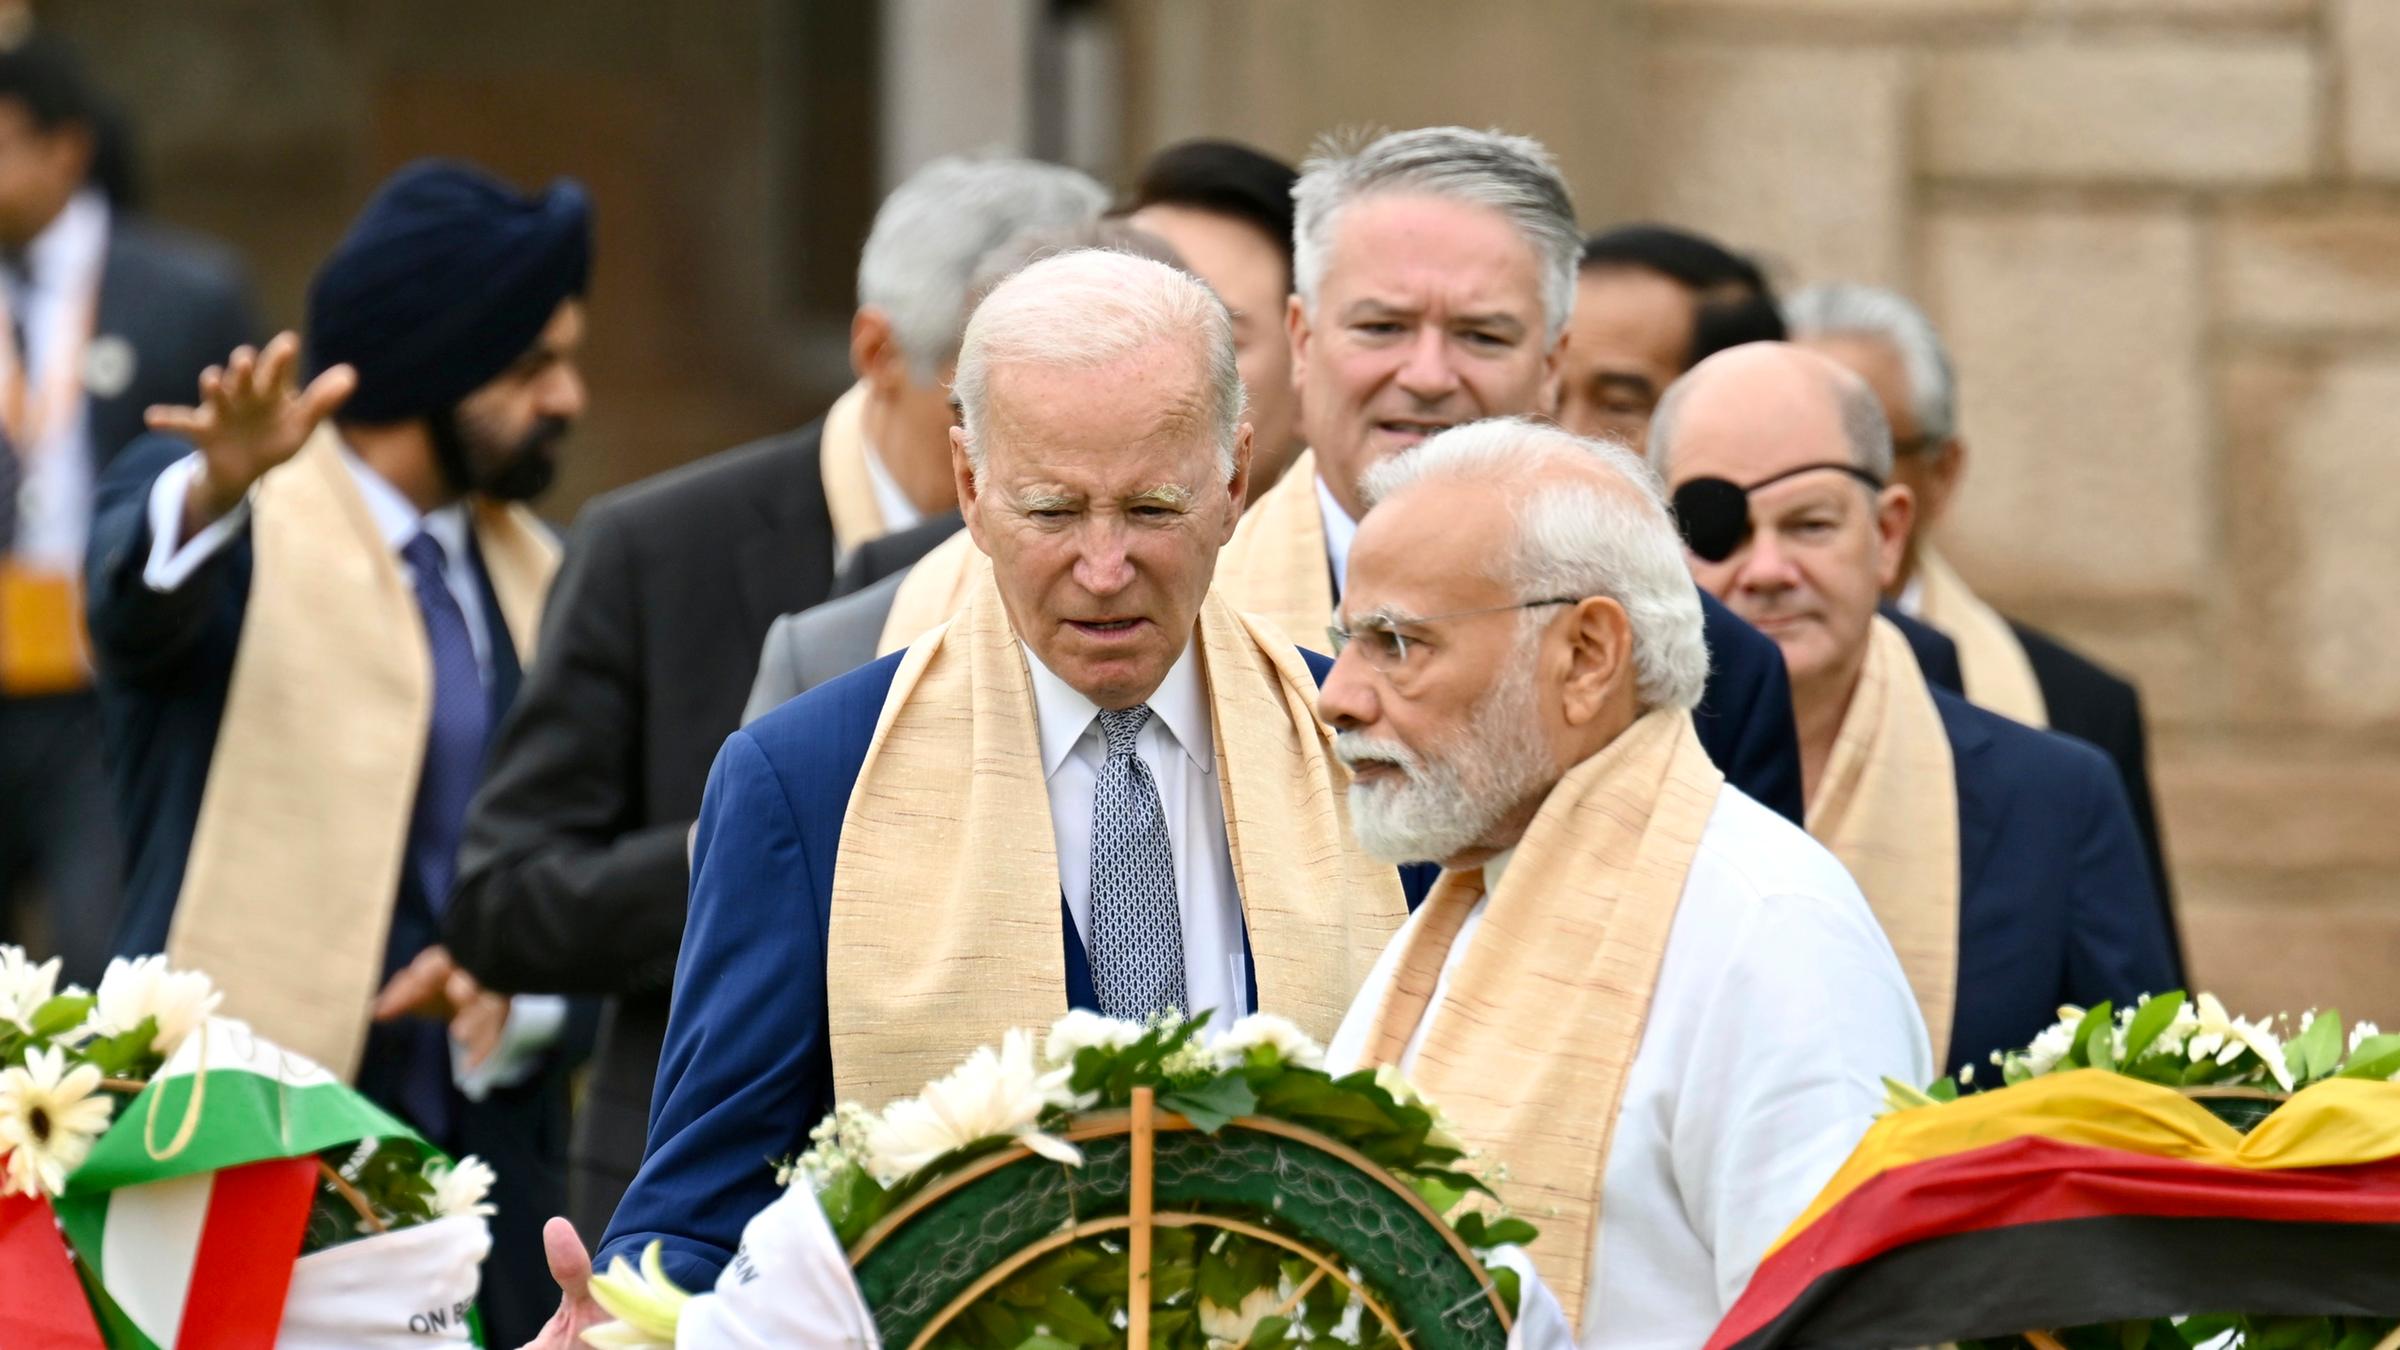 US-Präsident Joe Biden, Indiens Premierminister Narendra Modi, Bundeskanzler Olaf Scholz und andere Teilnehmer des G20-Gipfels am Sonntag beim Besuch des Mahatma Gandhi Memorials in Neu Delhi